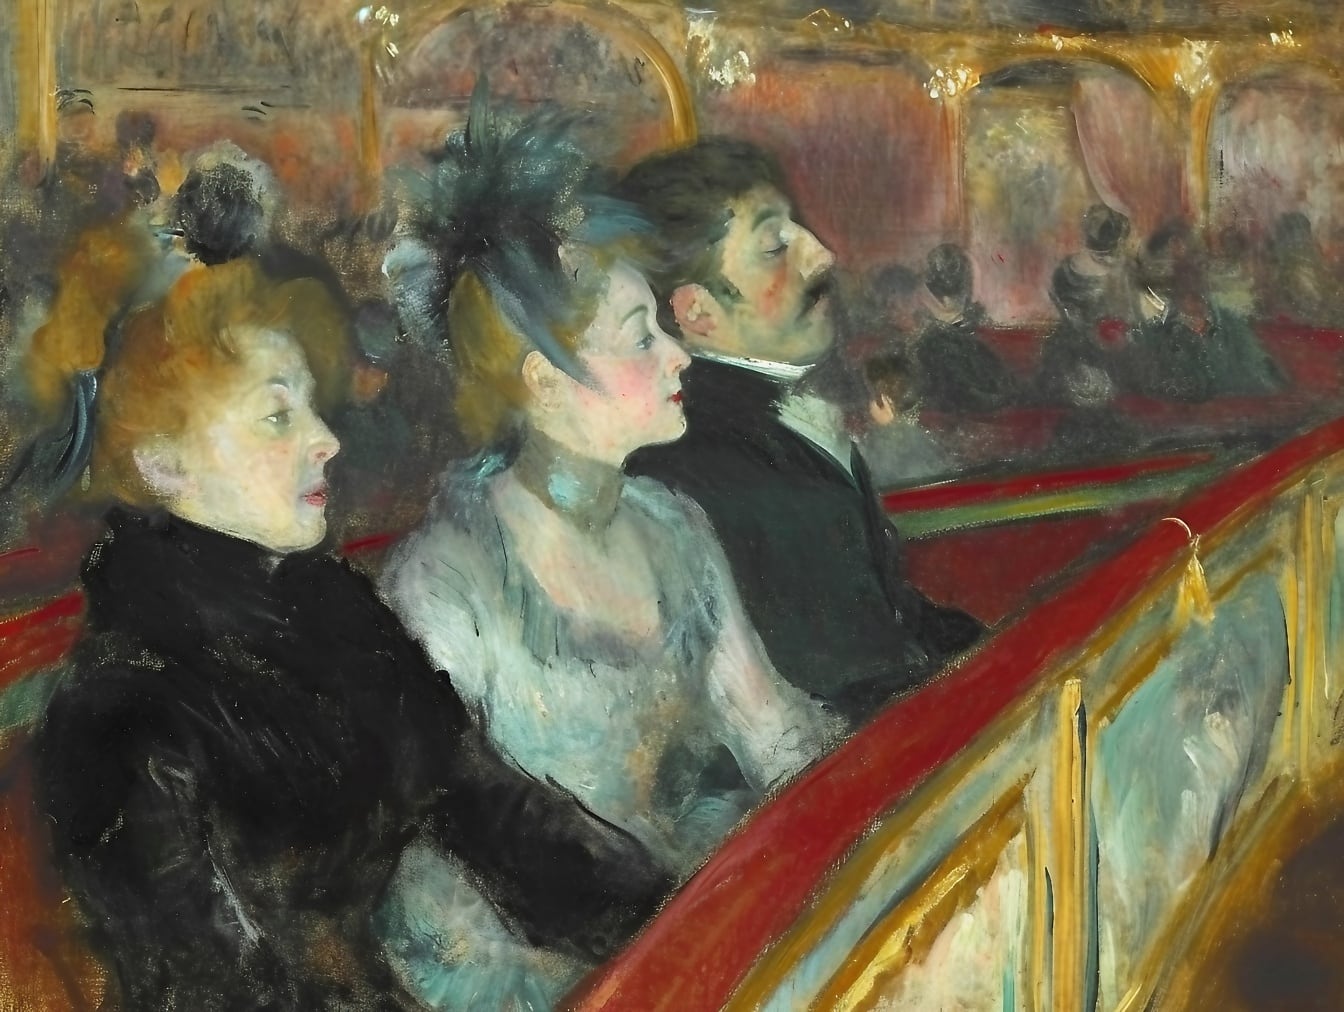 Dipinto ad olio di un gruppo di persone sedute in una prima fila di teatro raffigurante atmosfera del 19 ° secolo